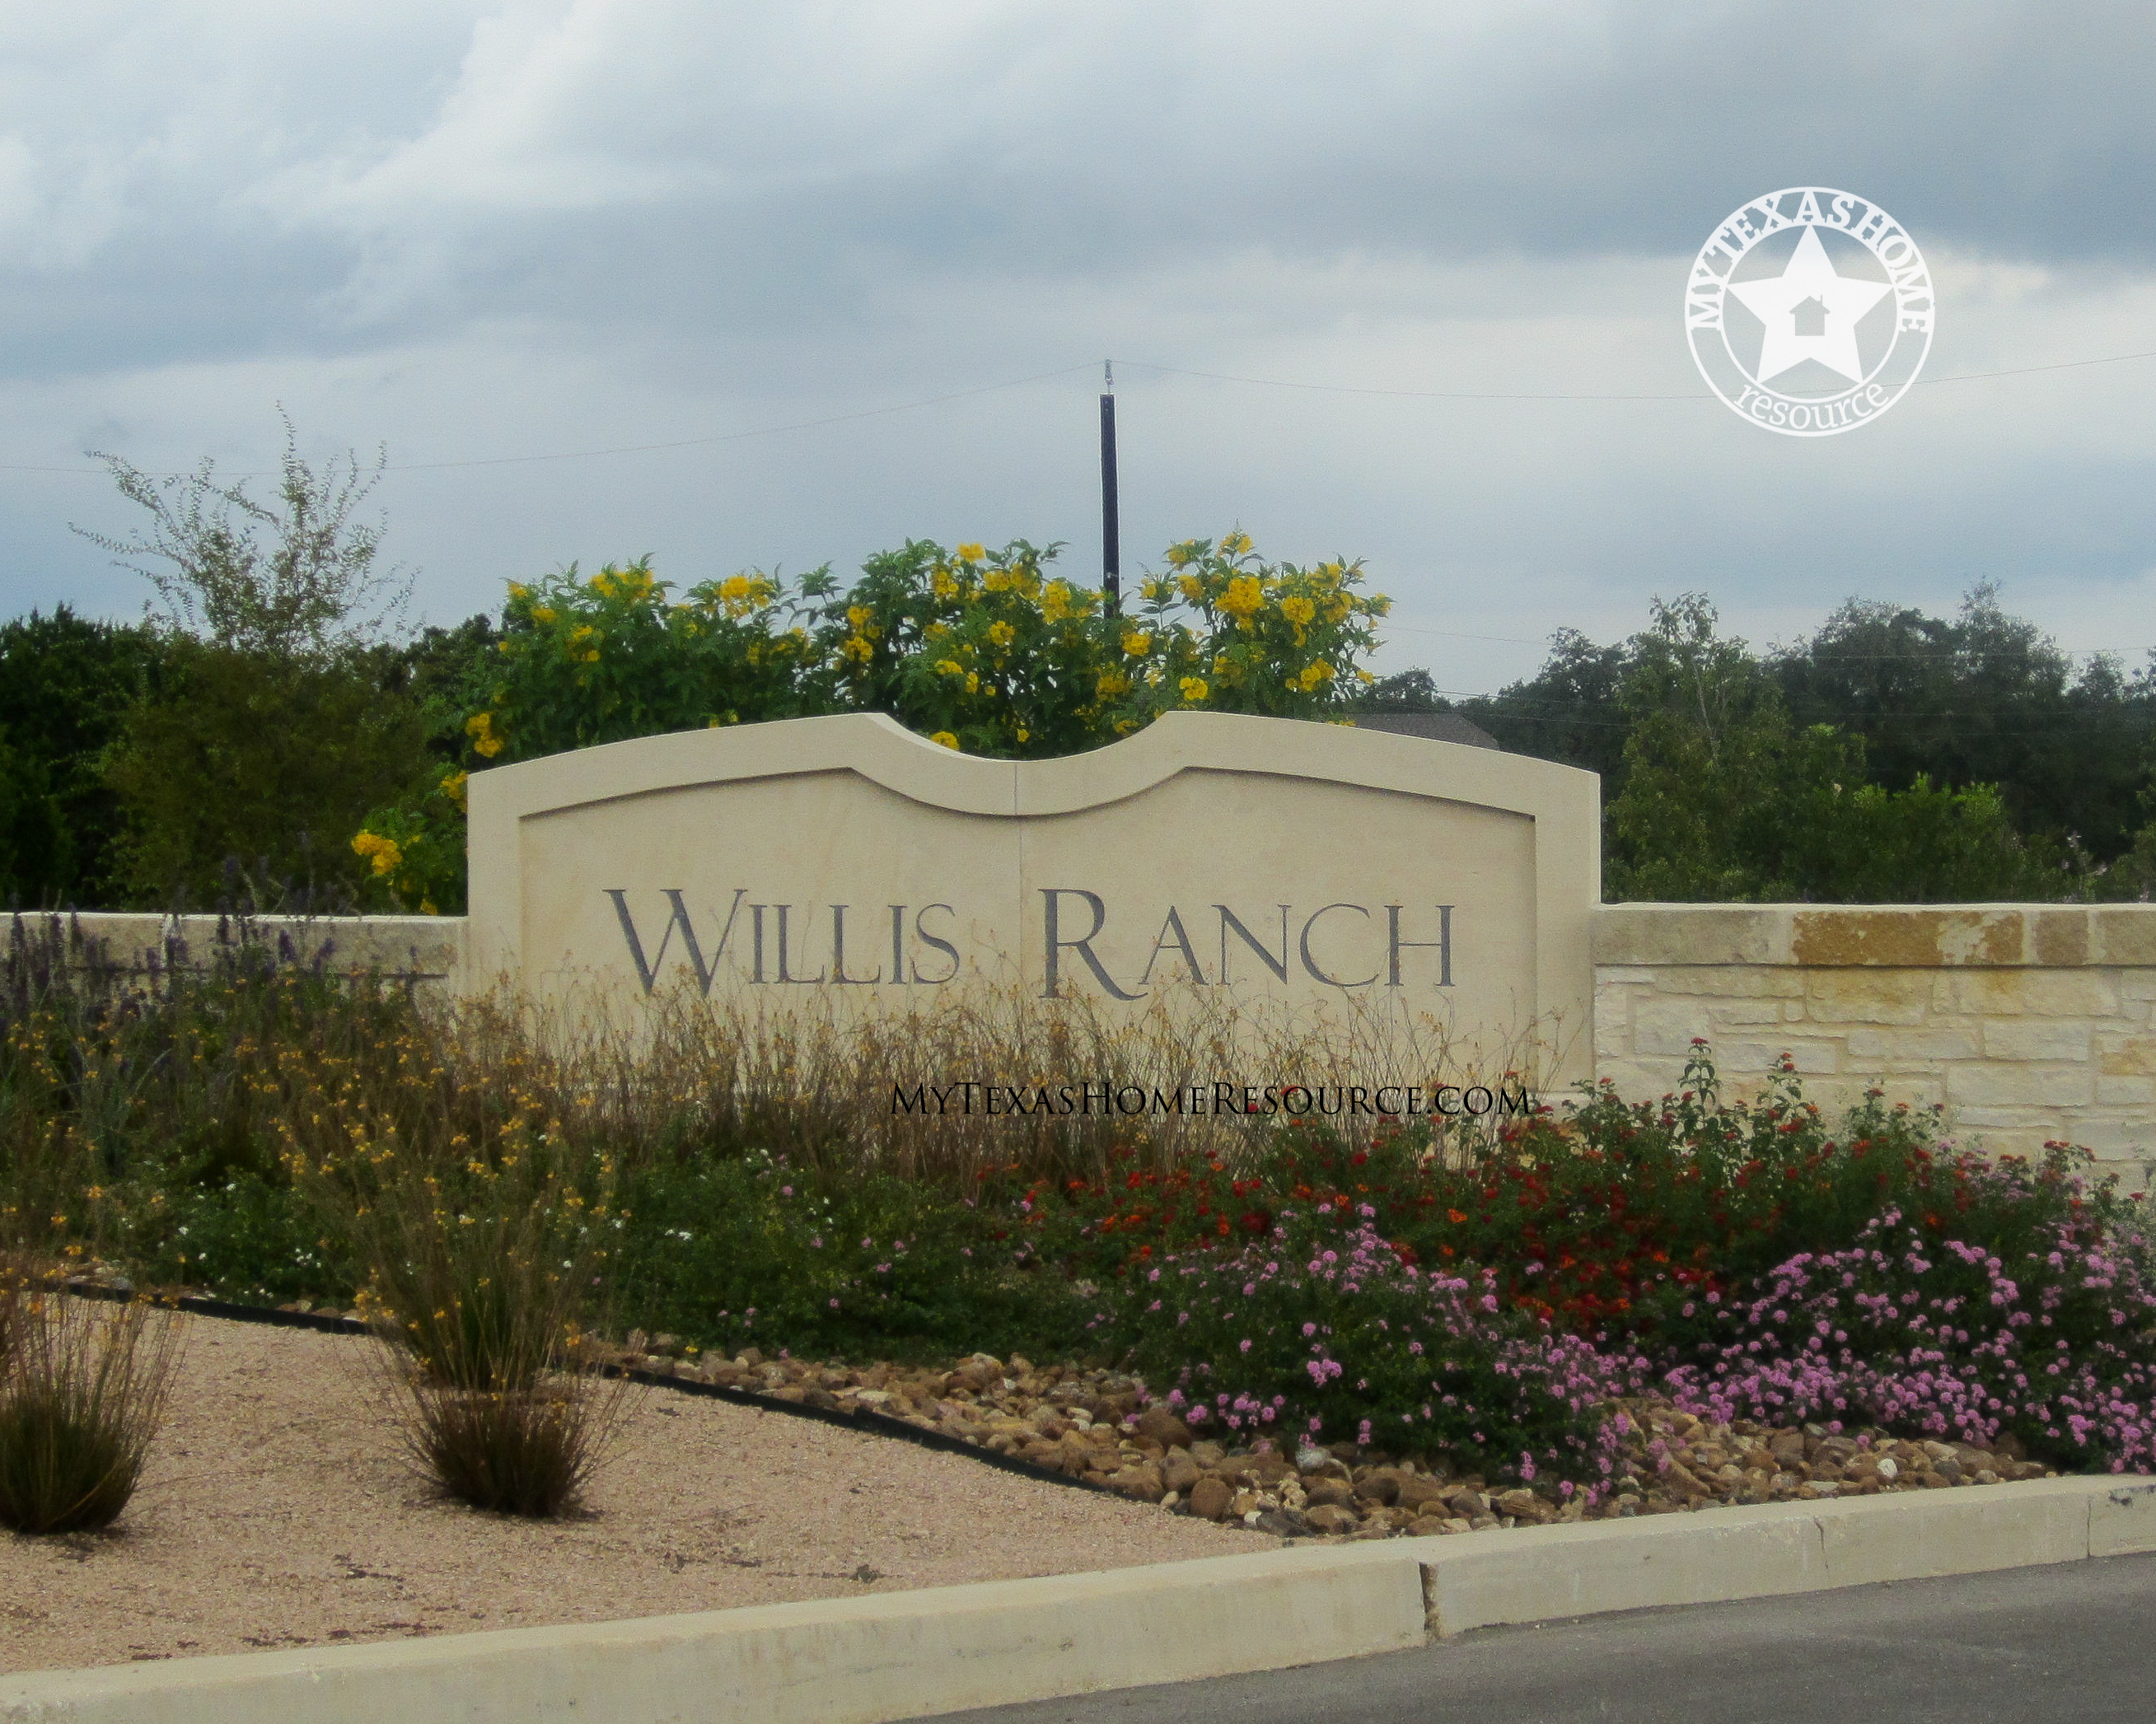 威利斯牧场社区网上正规的彩票网站，德克萨斯州